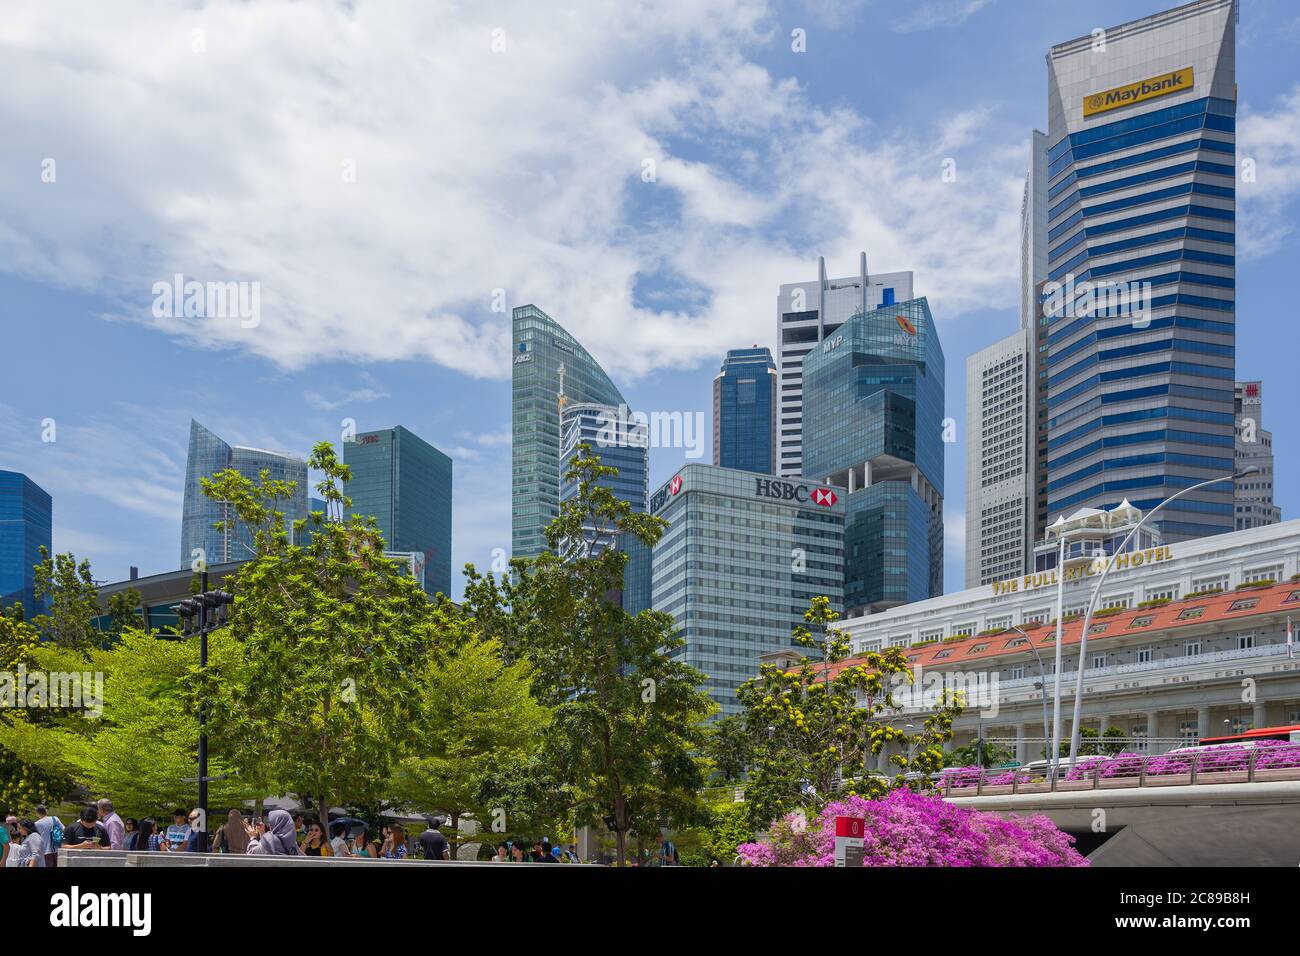 Quartier central des affaires, très dense, à Singapour, avec les bureaux de sociétés prestigieuses, contrastant avec le Fullerton Hotel traditionnel Banque D'Images